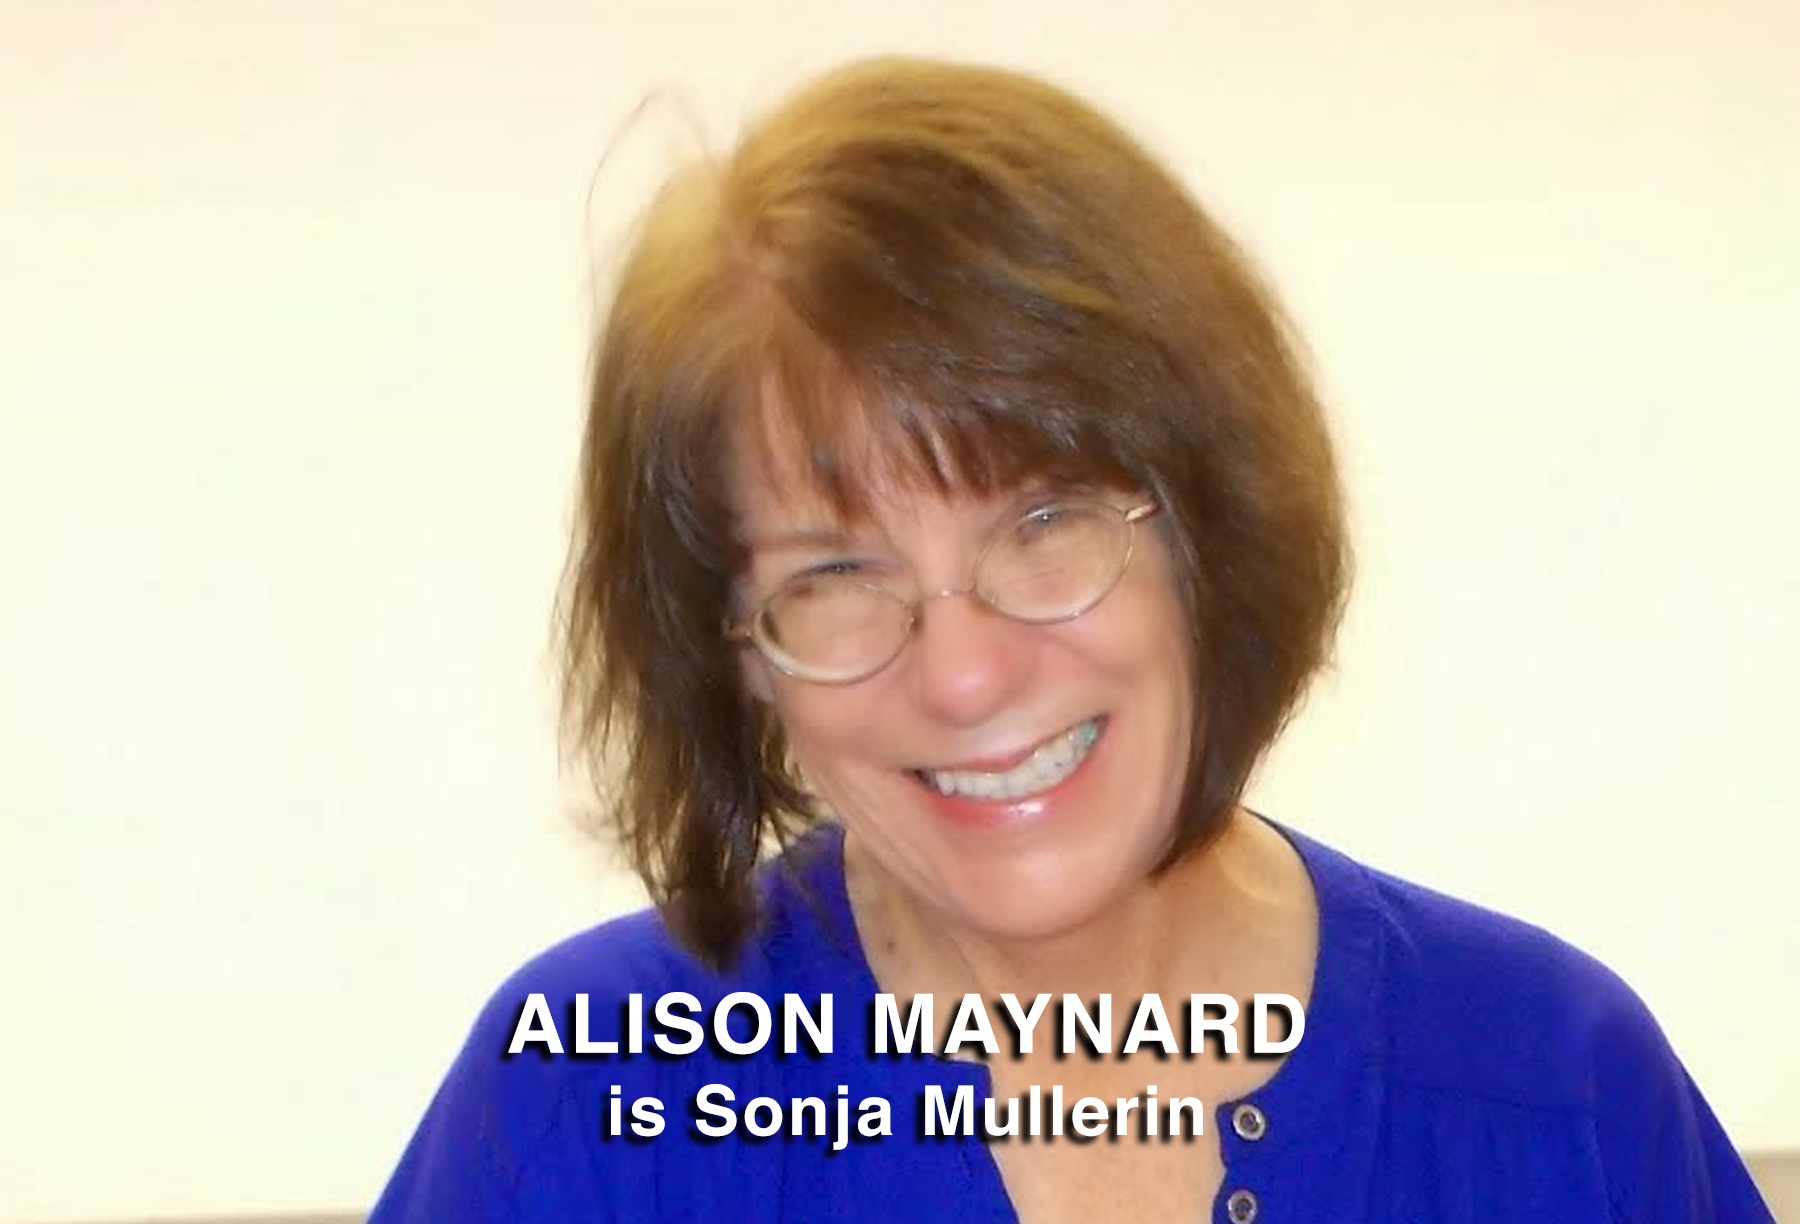 Alison Maynard is Sonja Mullerin